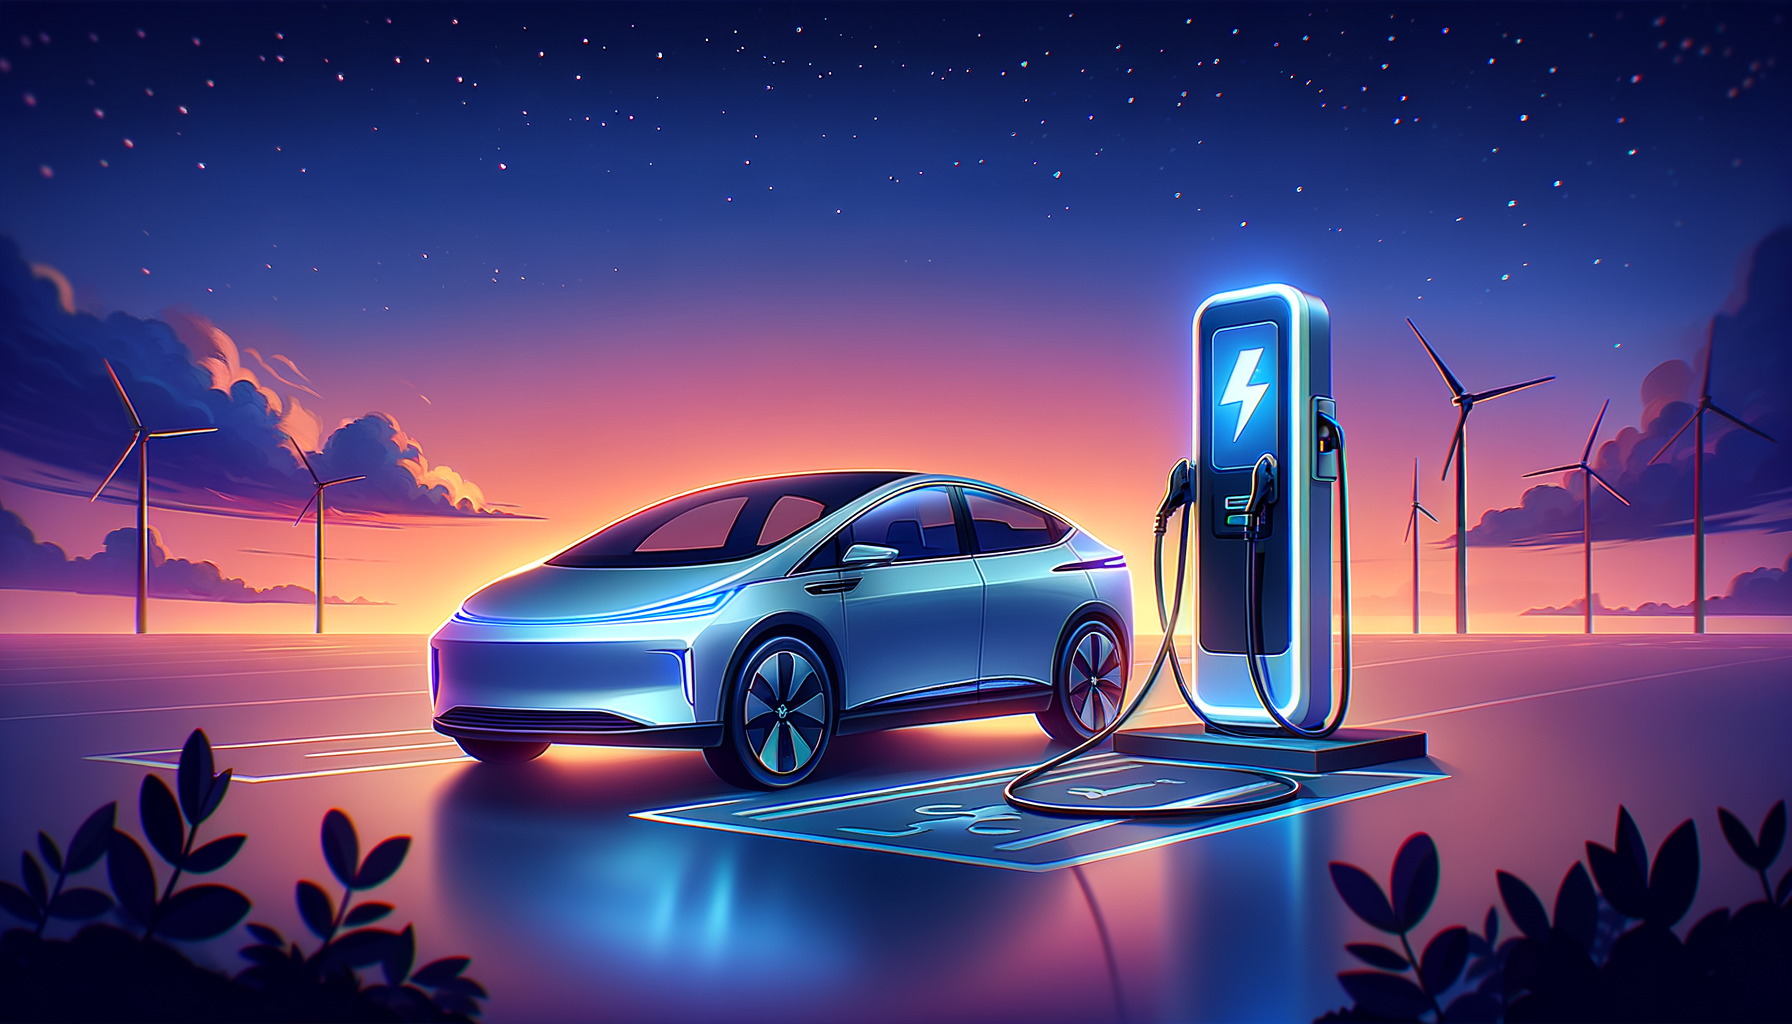 ALT: Tesla Model S charging at Supercharger station